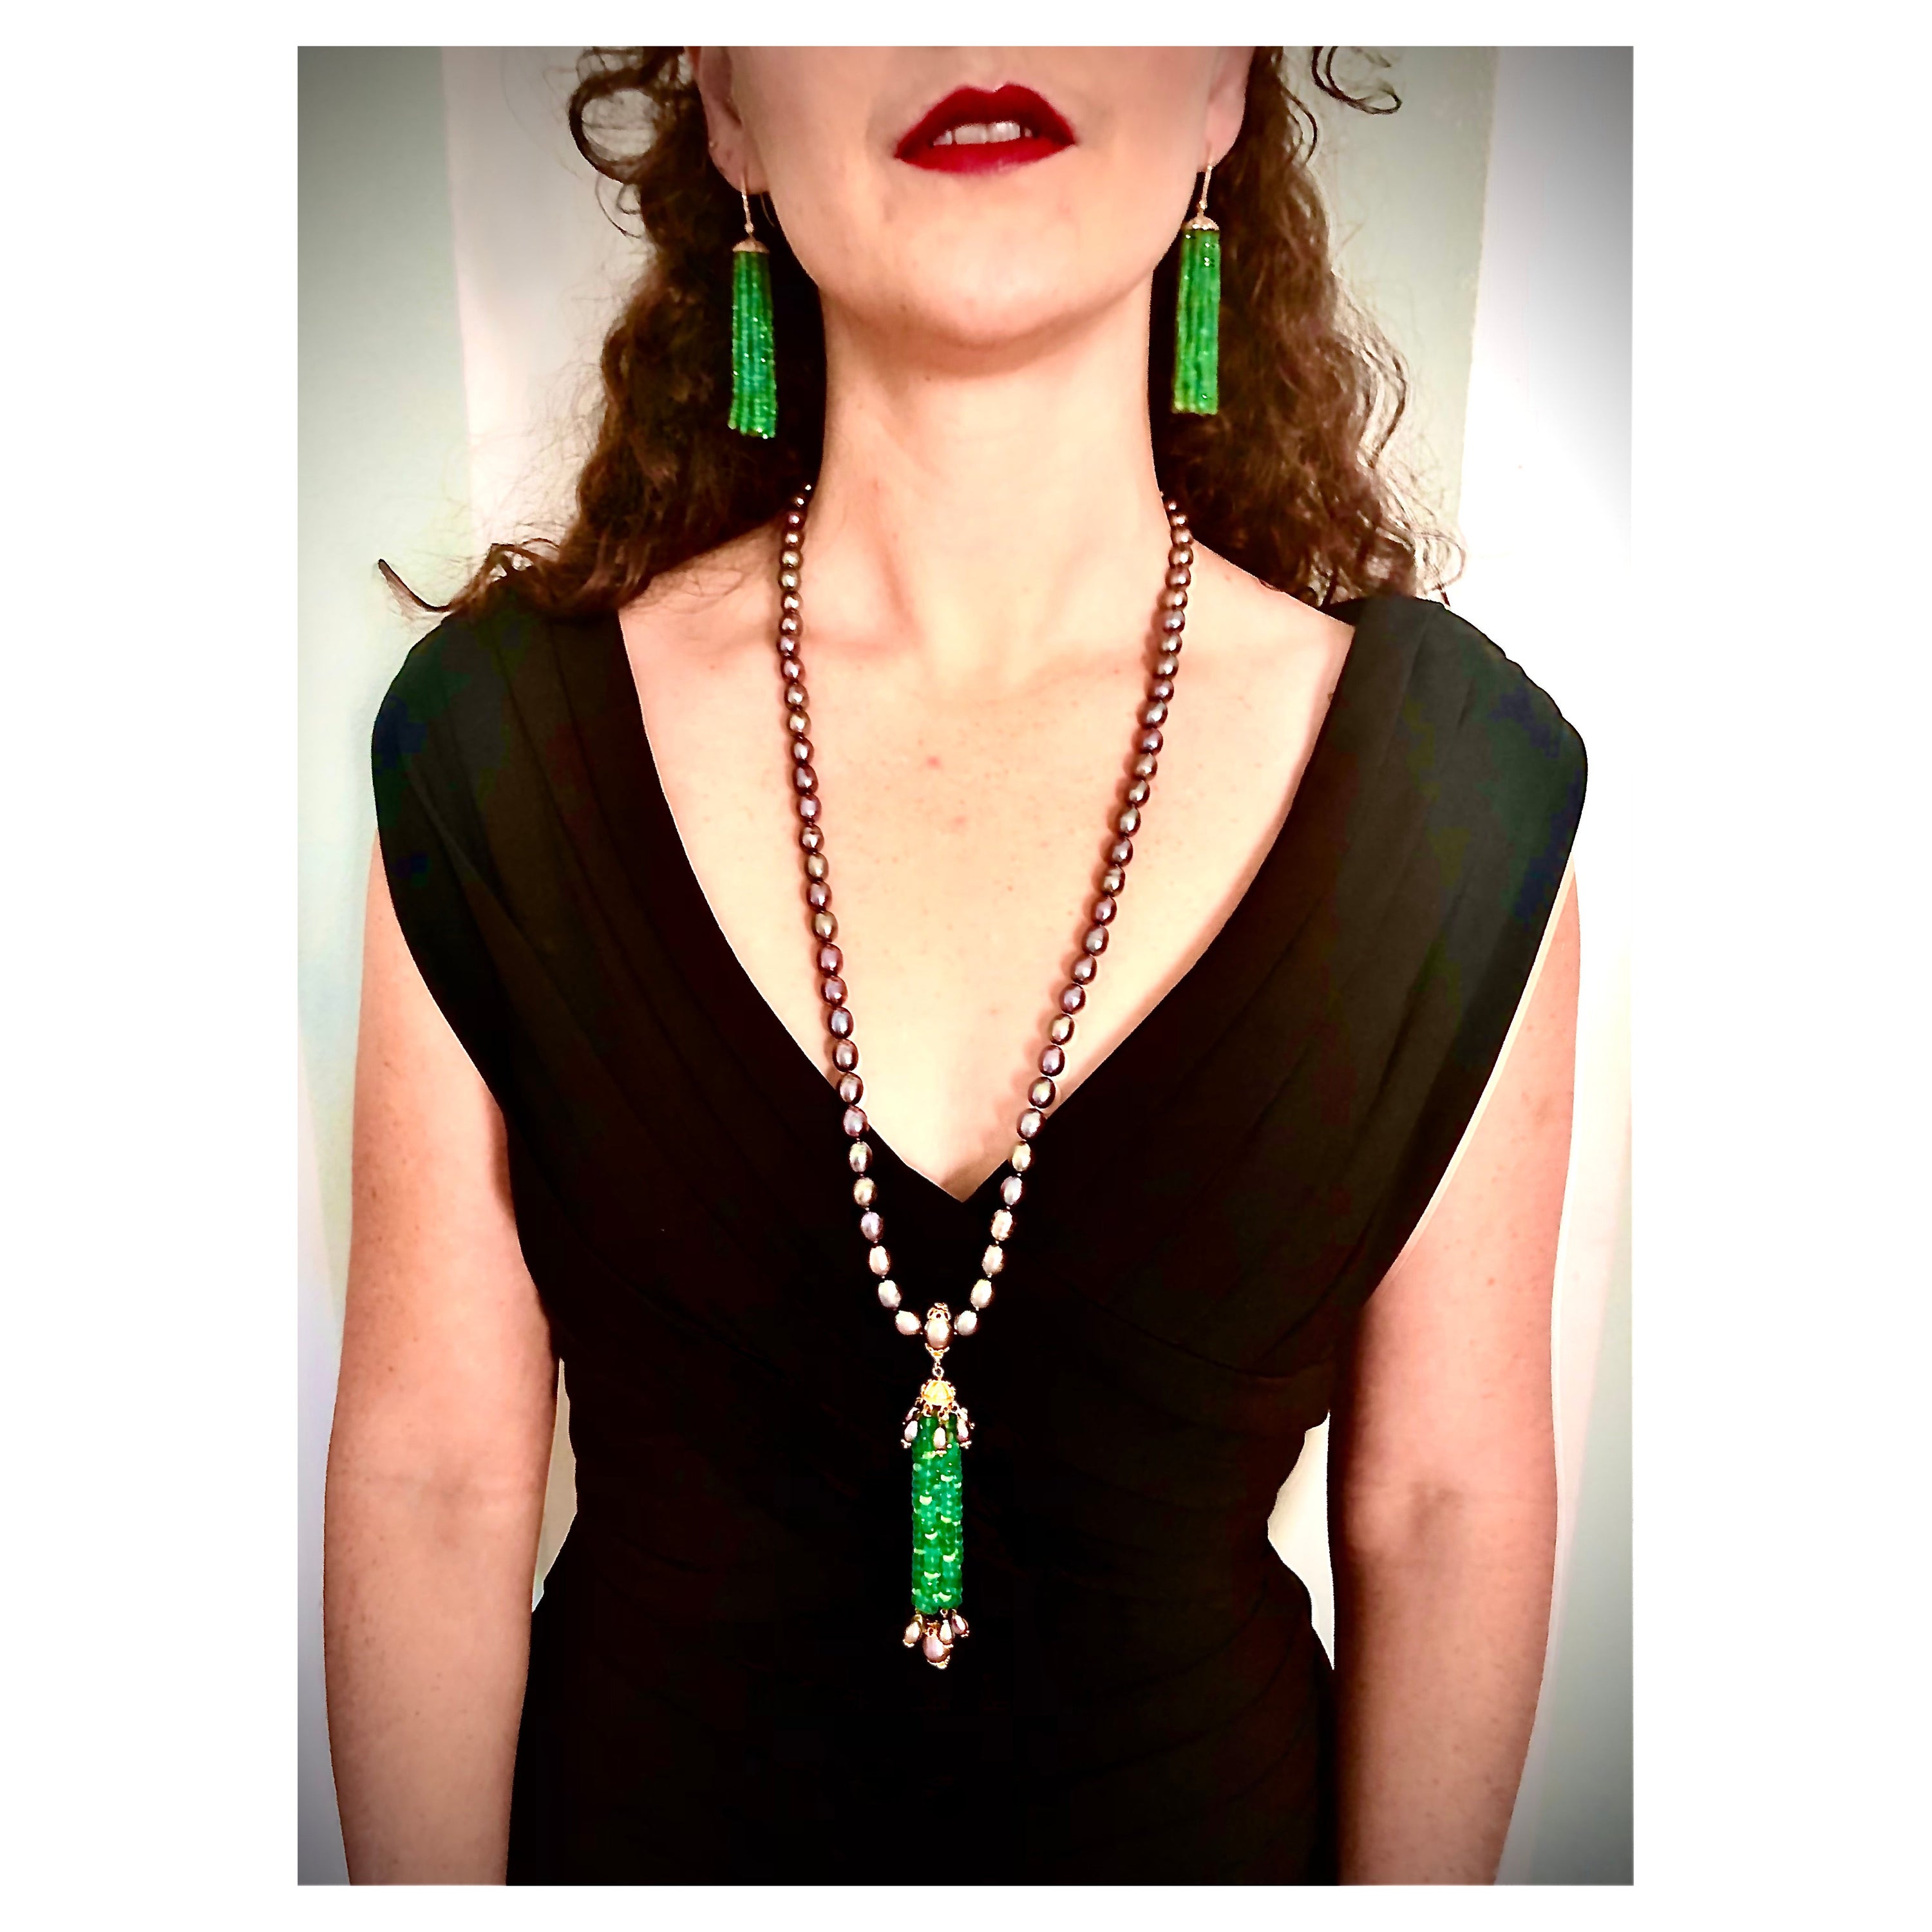 Eine elegante Sautoir-Halskette, bestehend aus einem 24-Zoll-Strang aus schwarzen ovalen Süßwasserperlen mit einer exquisiten langen Quaste aus gut gefärbten facettierten Smaragdperlen, die mit facettierten Bergkristallperlen durchsetzt sind. Die